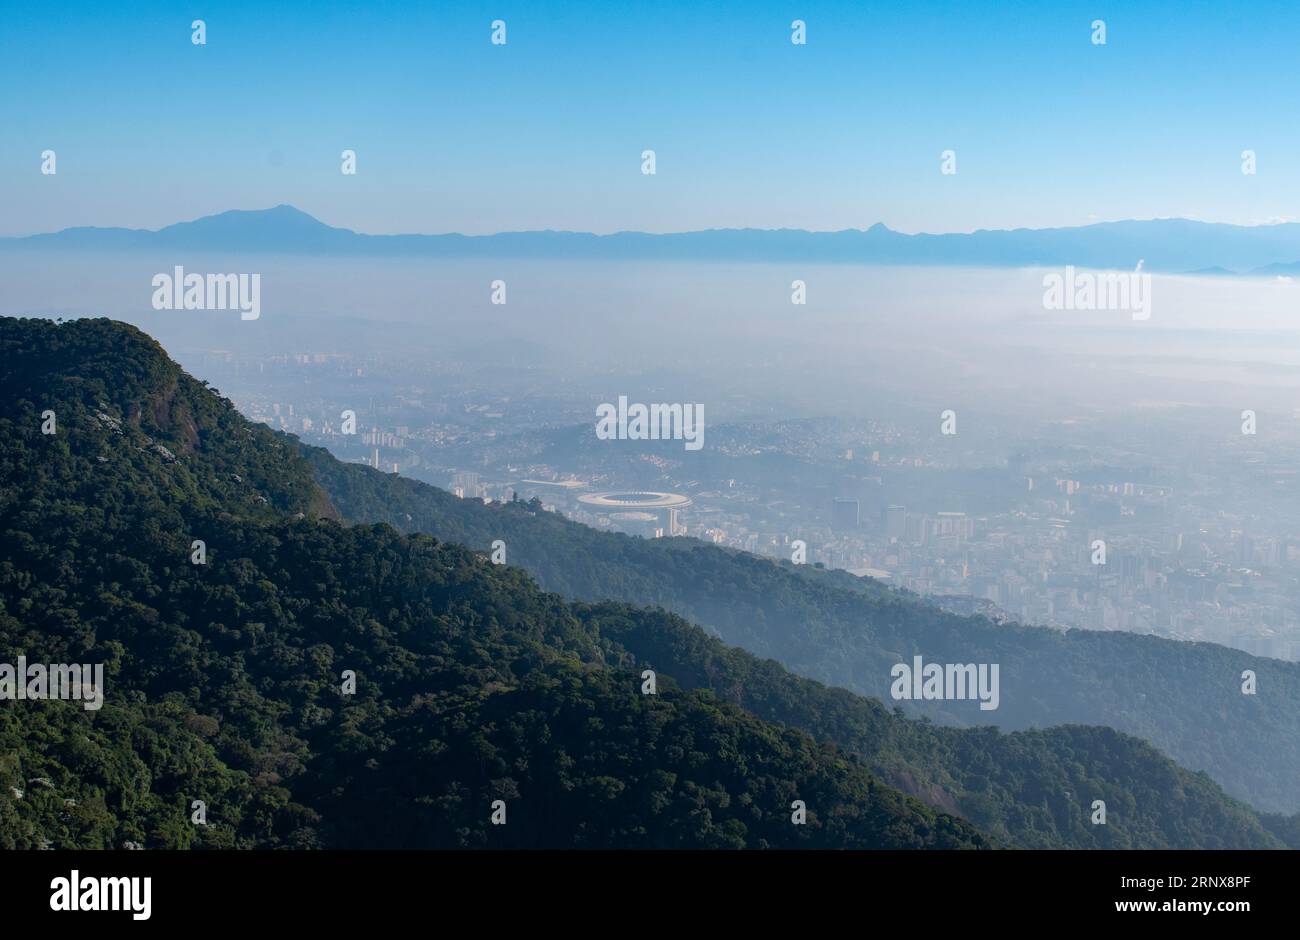 Rio de Janeiro: Skyline nella nebbia vista dal monte Corcovado con lo Stadio Maracana, uno dei più famosi stadi di calcio del mondo Foto Stock